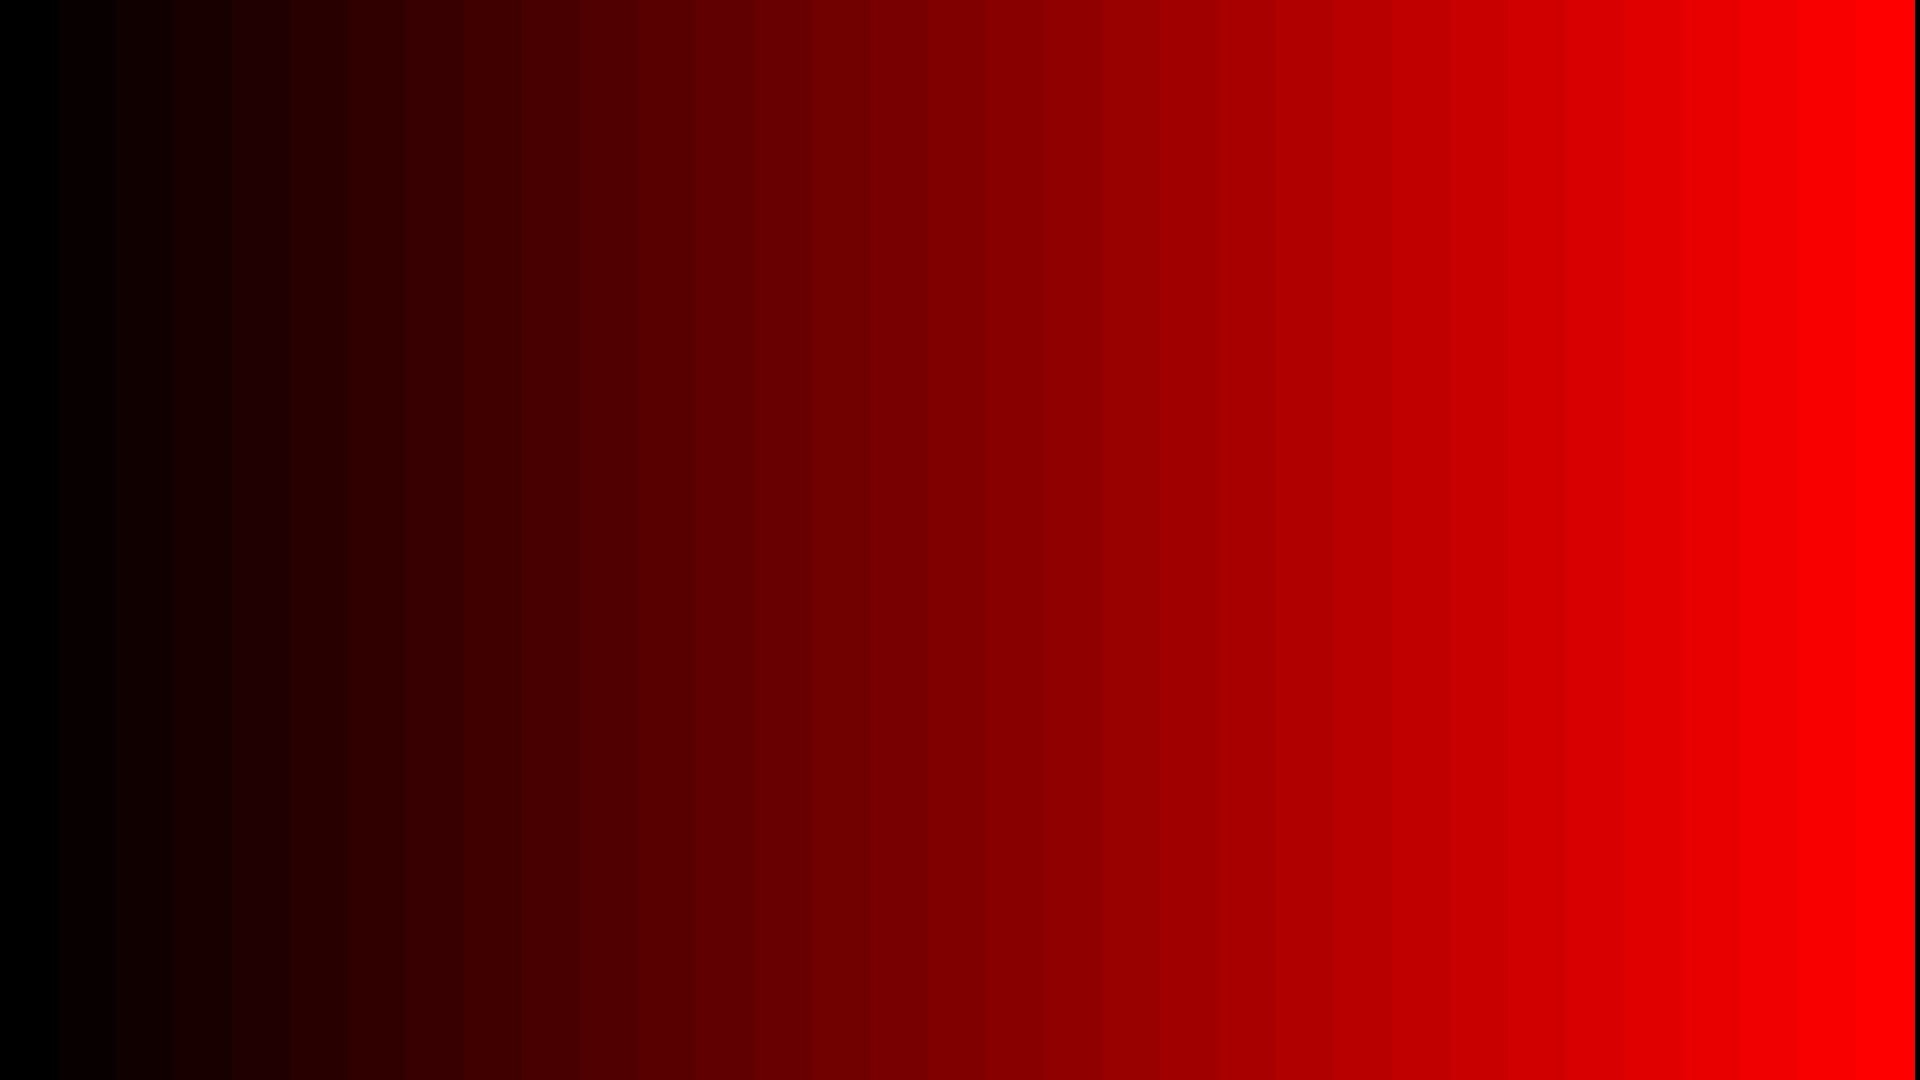 red gradient wallpaper,red,black,orange,maroon,brown